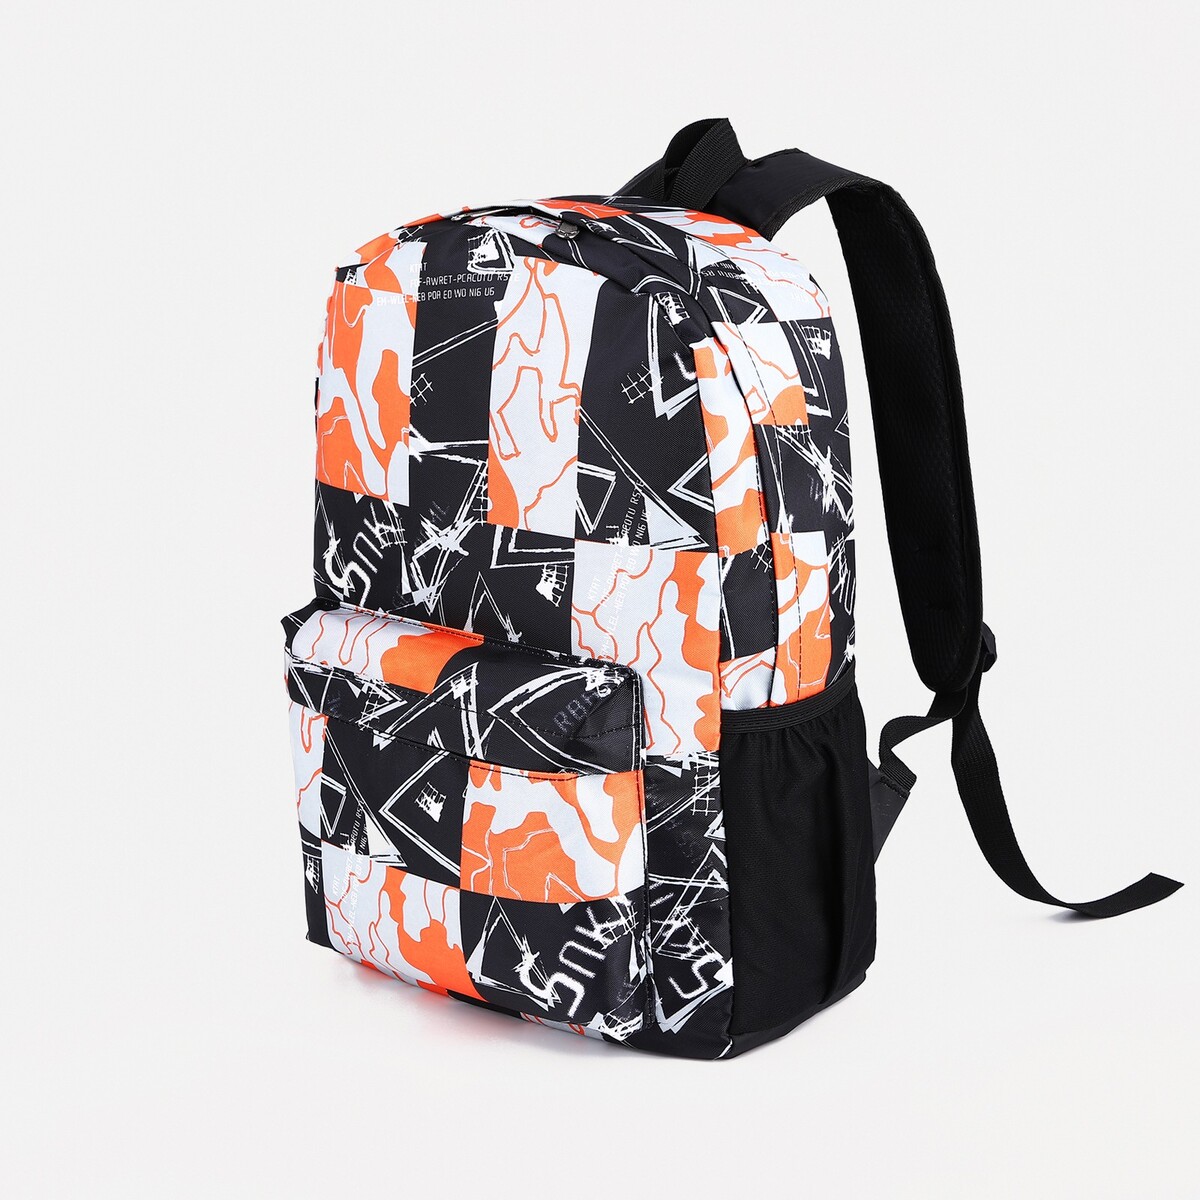 Рюкзак школьный из текстиля на молнии, 3 кармана, цвет оранжевый/черный pixel bag рюкзак с led дисплеем pixel plus orange оранжевый